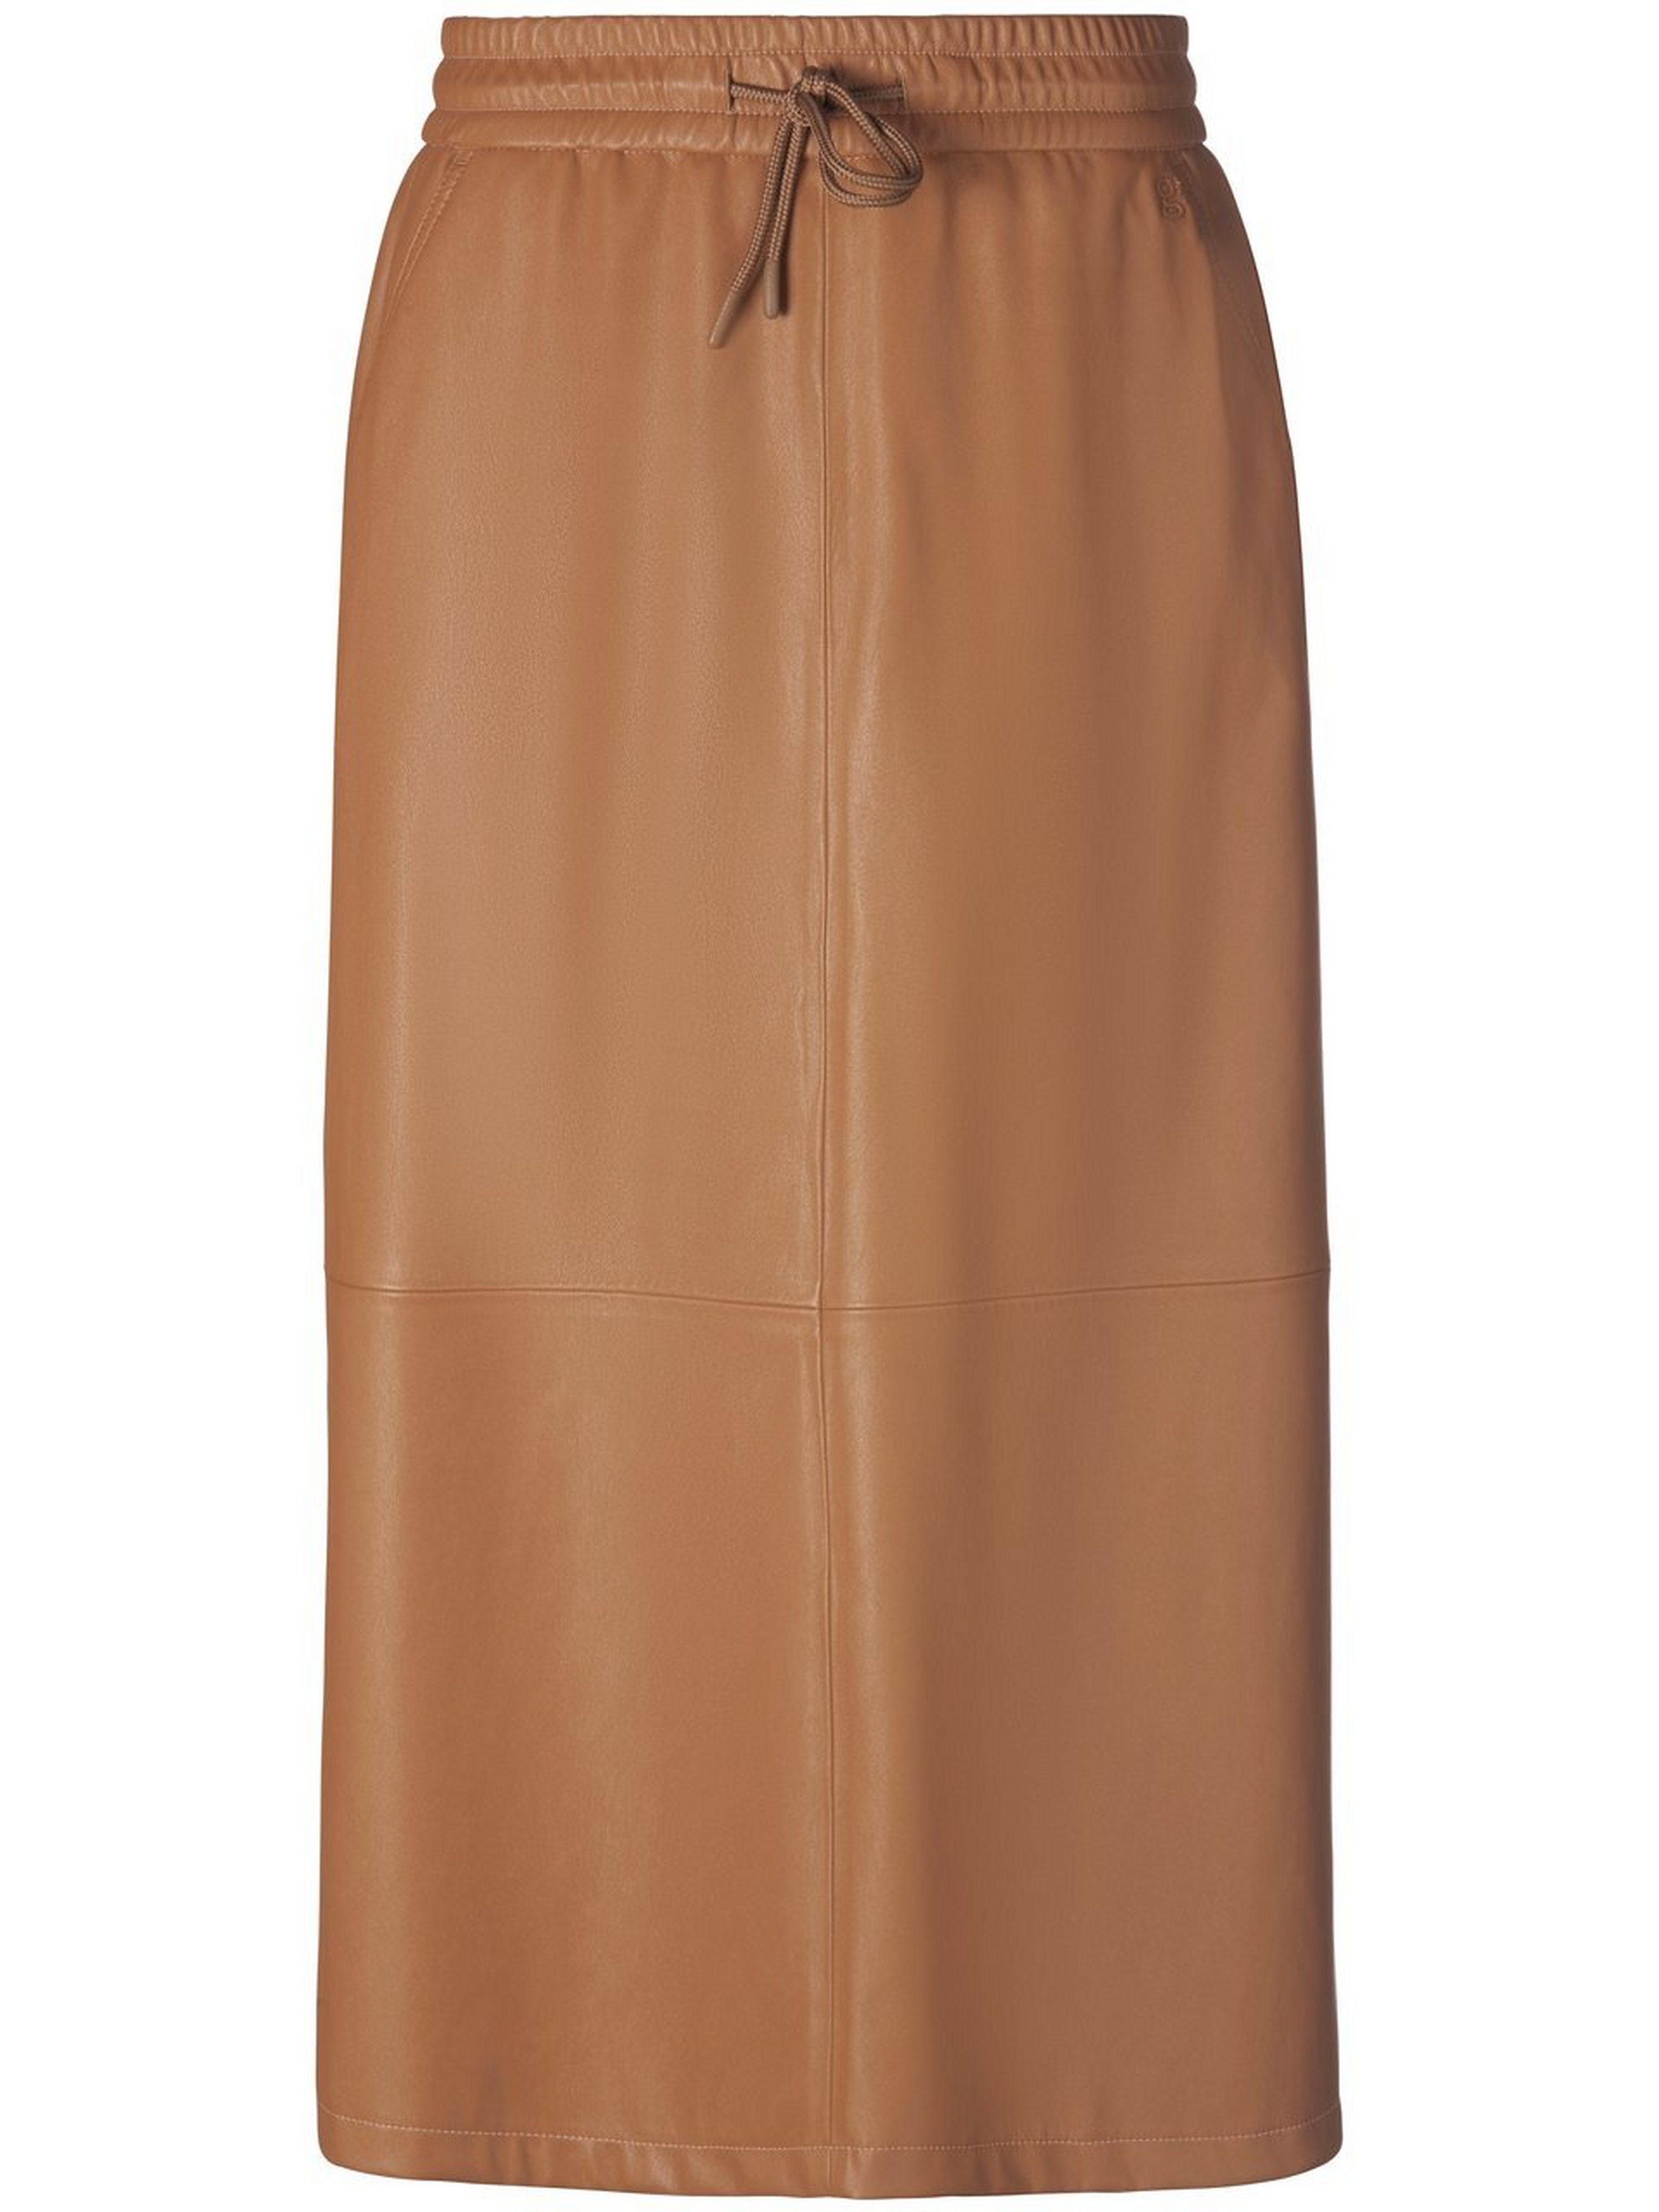 La jupe taille élastiquée  gardeur marron taille 40